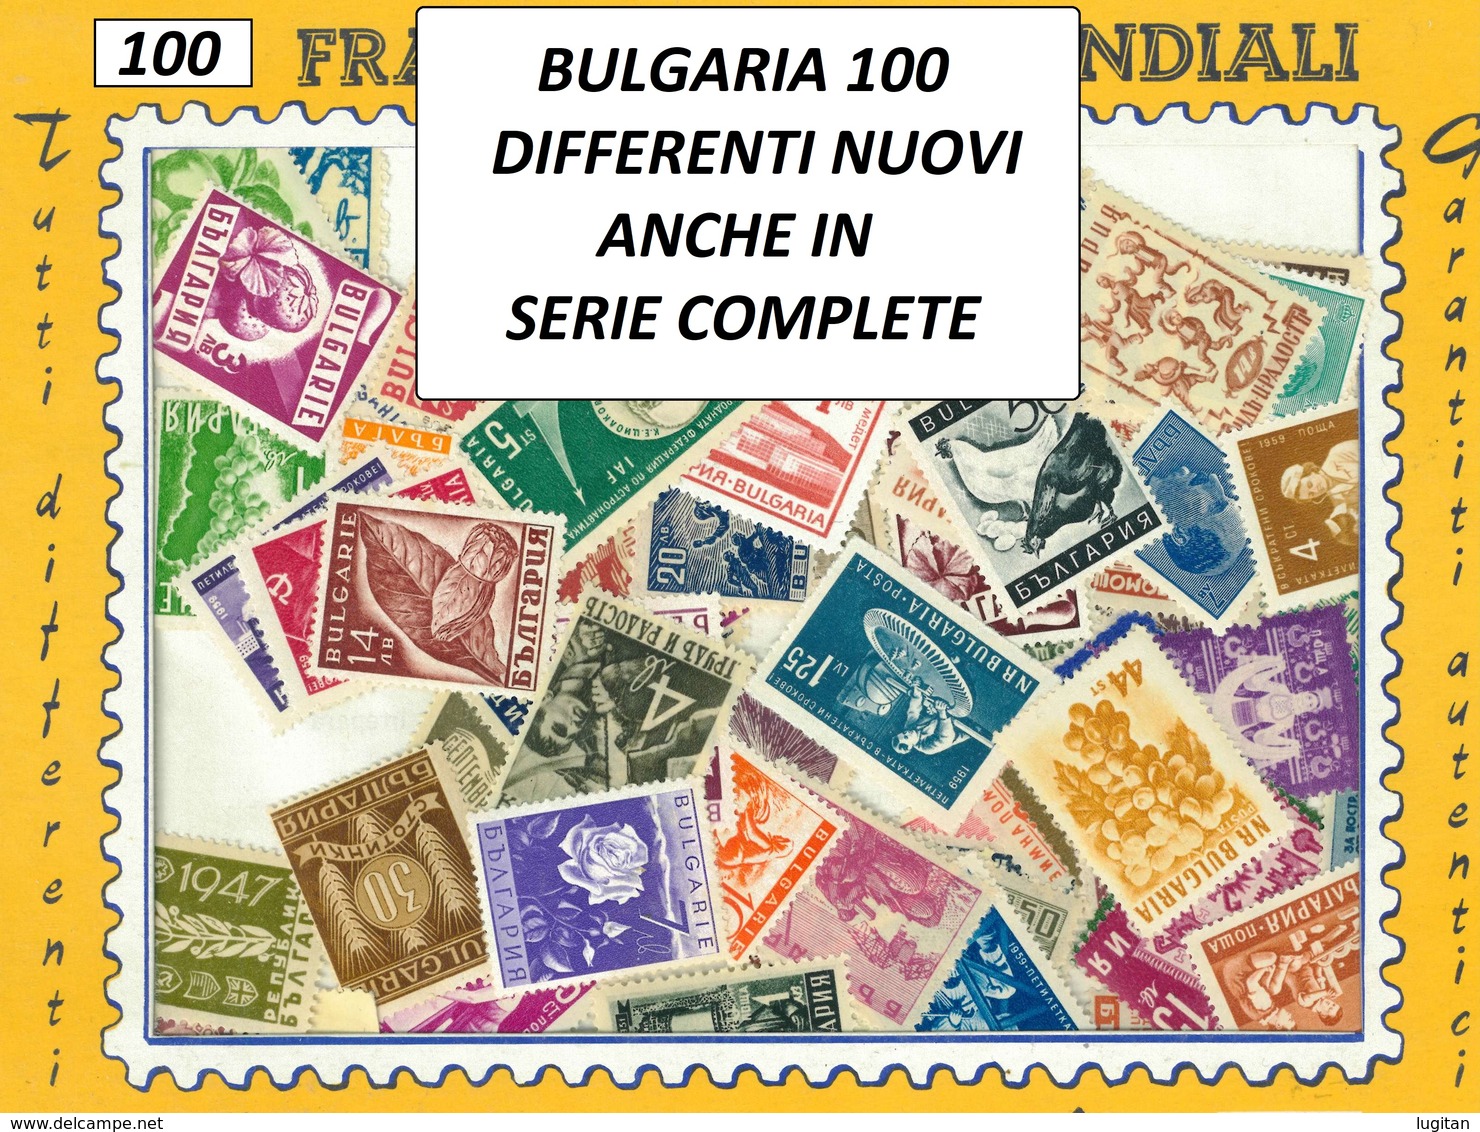 MIX DI 100 FRANCOBOLLI ASSORTITI SCELTI NUOVI DI BULGARIA - 100 BULGARIAN MINT STAMPS - Collezioni & Lotti